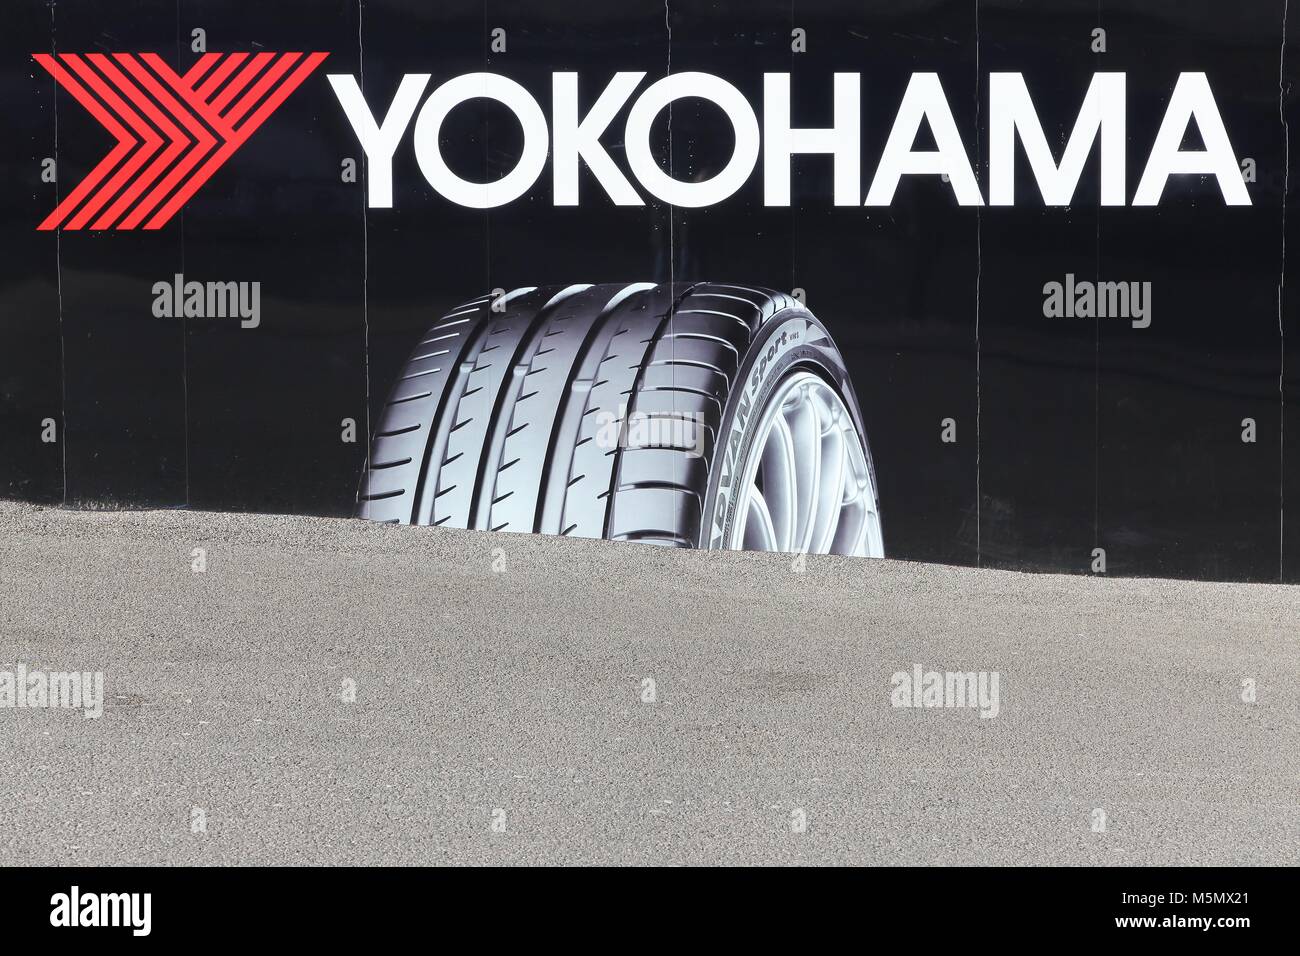 Londres, Royaume-Uni - 1 Février, 2018 : Yokohama logo sur le mur. Yokohama est un fabricant de pneus basée à Tokyo, Japon Banque D'Images